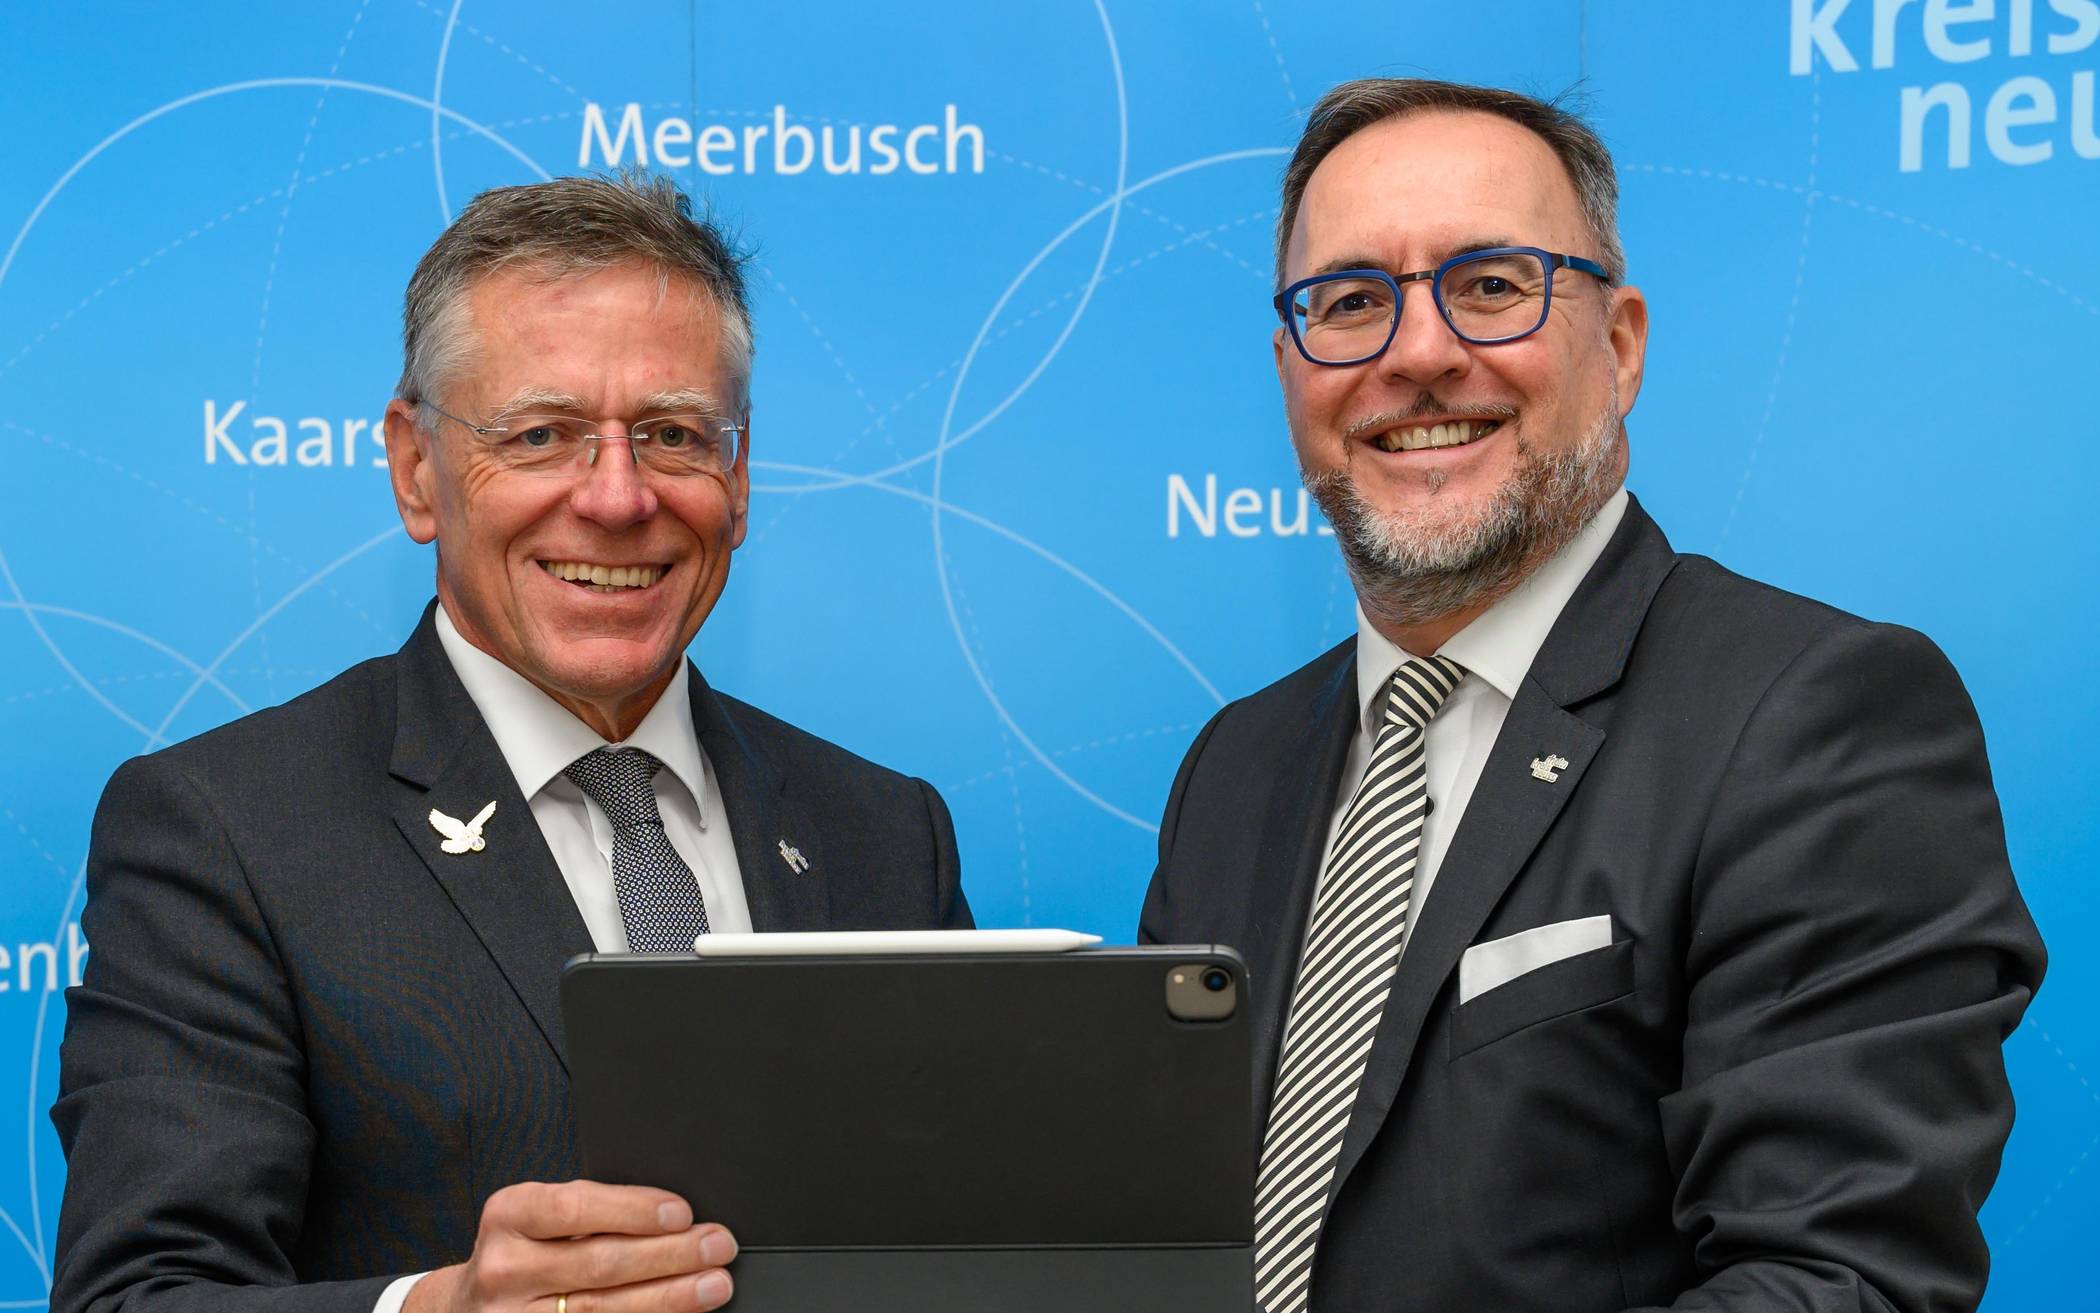 Landrat Hans-Jürgen Petrauschke (links) und Baudezernent Harald Vieten setzen auf hocheffiziente LED-Beleuchtung, um dauerhaft Energie zu sparen und den Klimaschutz zu verbessern.